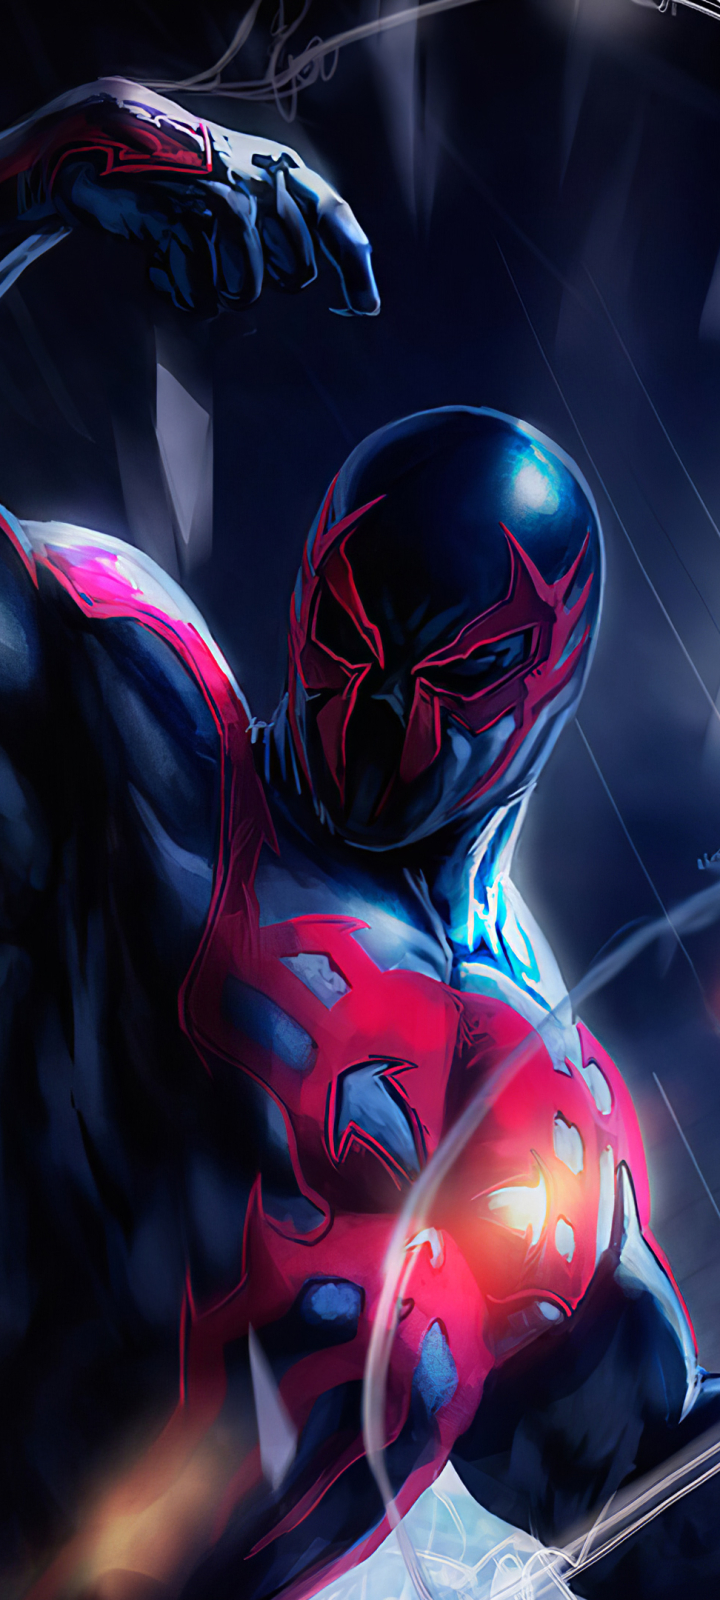 Descarga gratuita de fondo de pantalla para móvil de Historietas, Hombre Araña, Spider Man, Hombre Araña 2099.